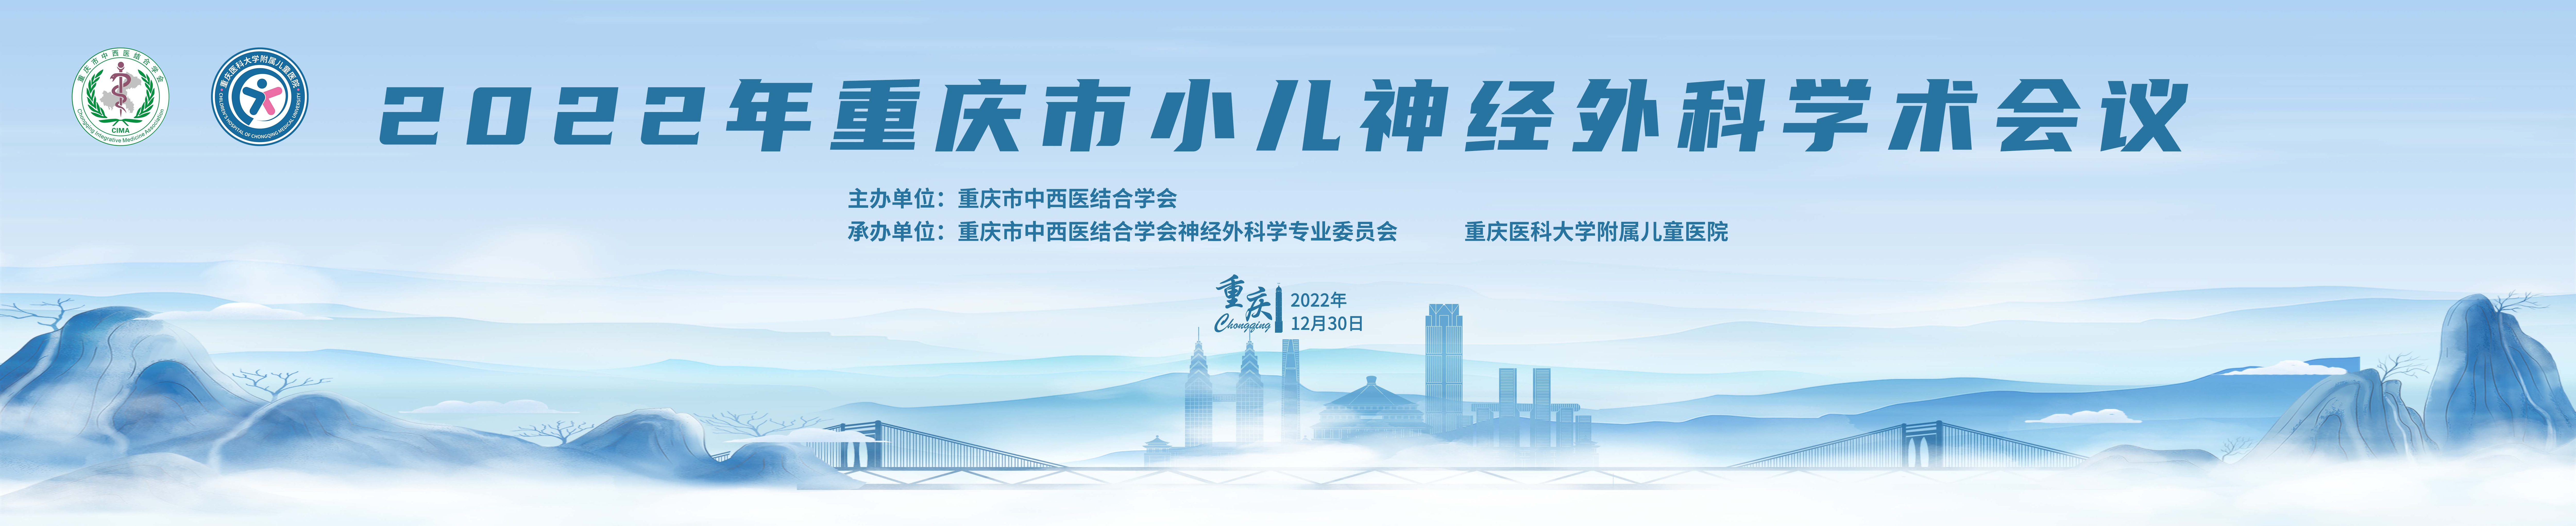 2022年重庆市小儿神经外科学术会议